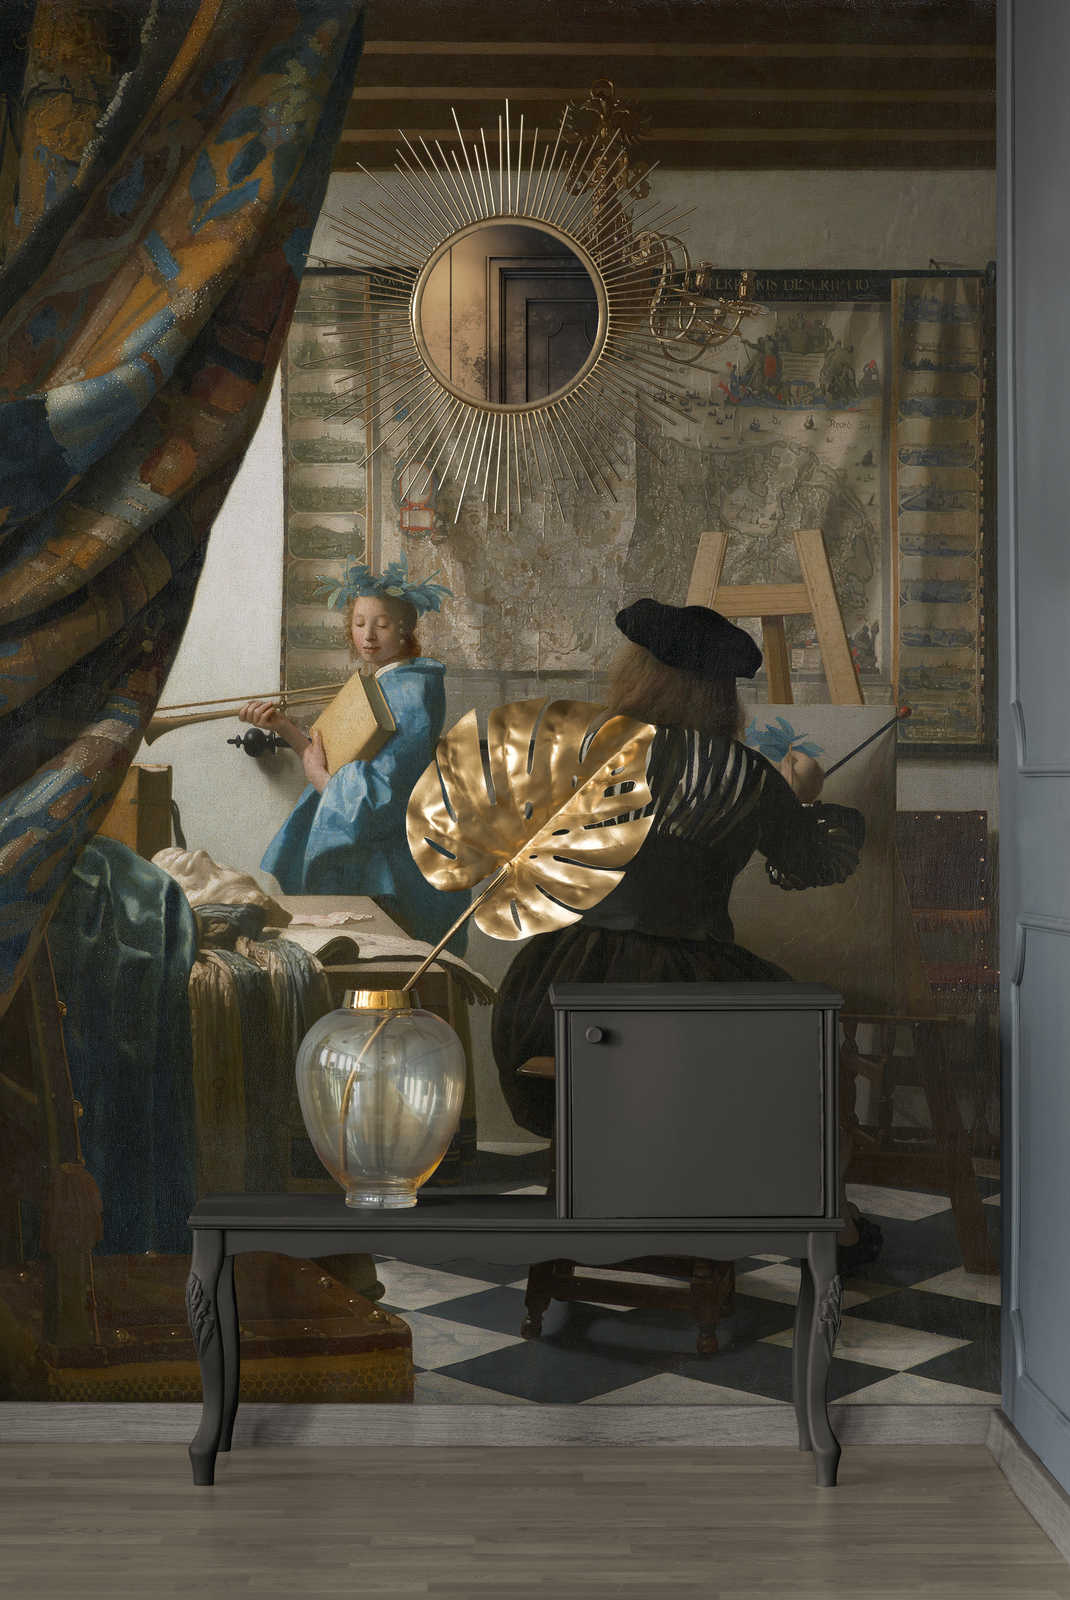             Mural "Vermeer en su estudio" de Jan Vermeer
        